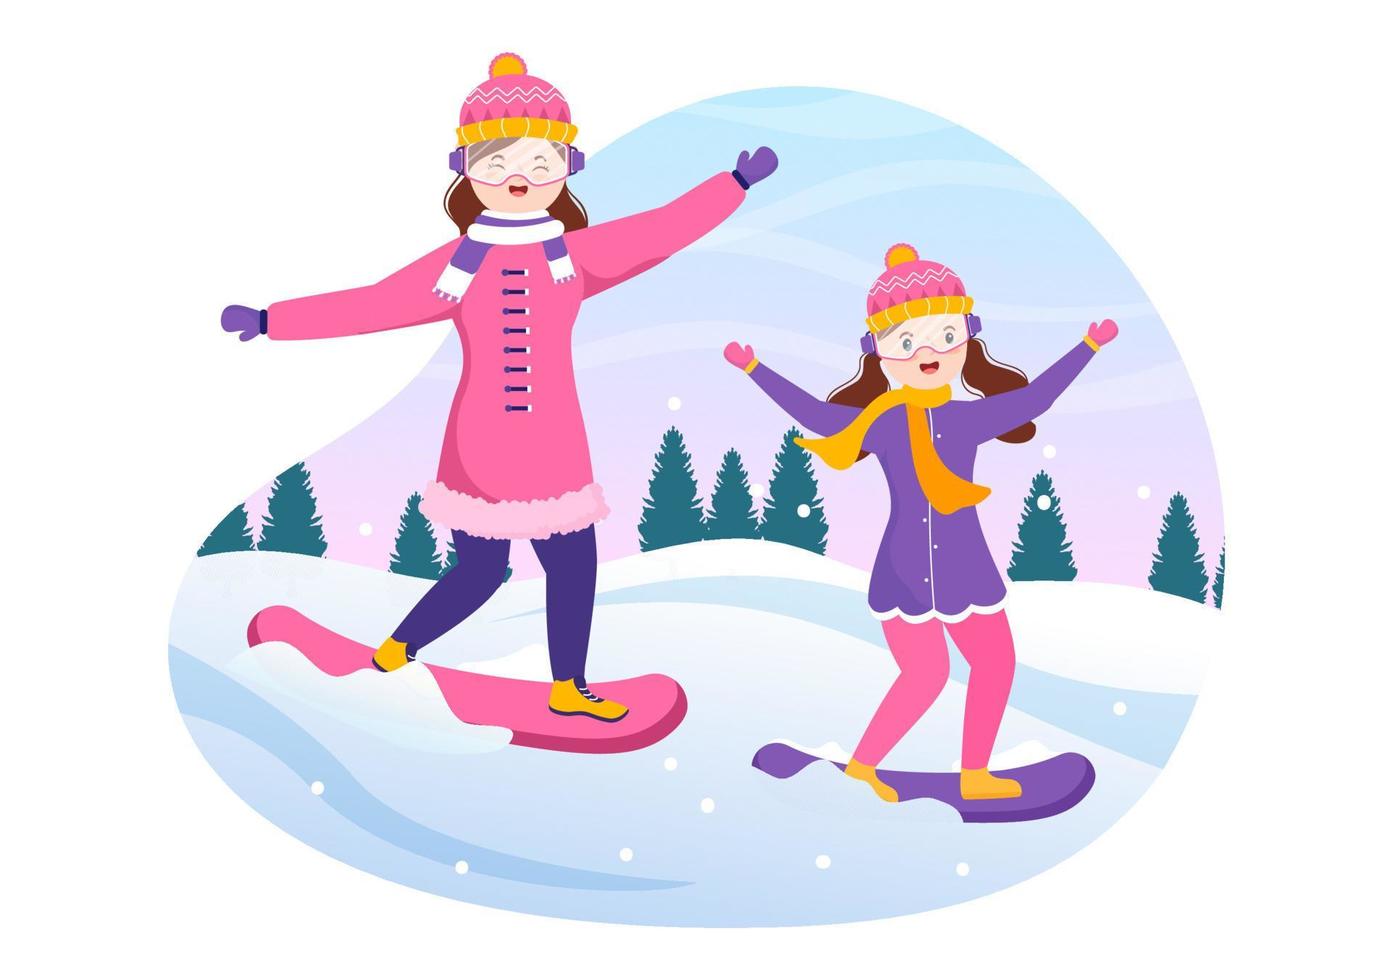 snowboard handritad tecknad platt illustration av människor i vinterdräkt som glider och hoppar med snowboards på snöiga bergssidor eller sluttningar vektor